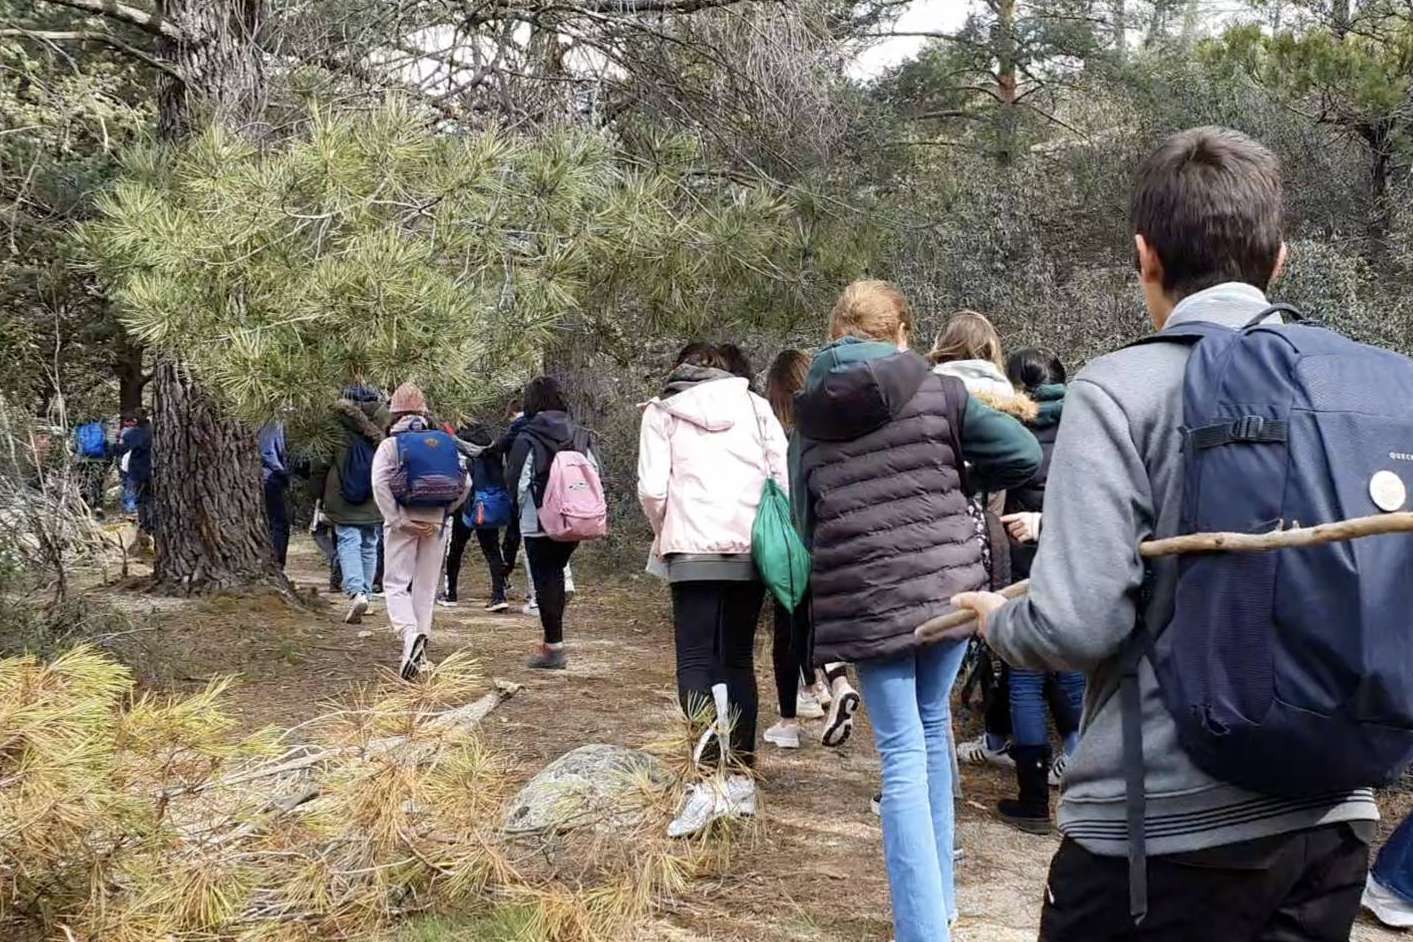 MADRIDAVENTOURS fomenta las actividades al aire libre para prevenir el sedentarismo en adolescentes